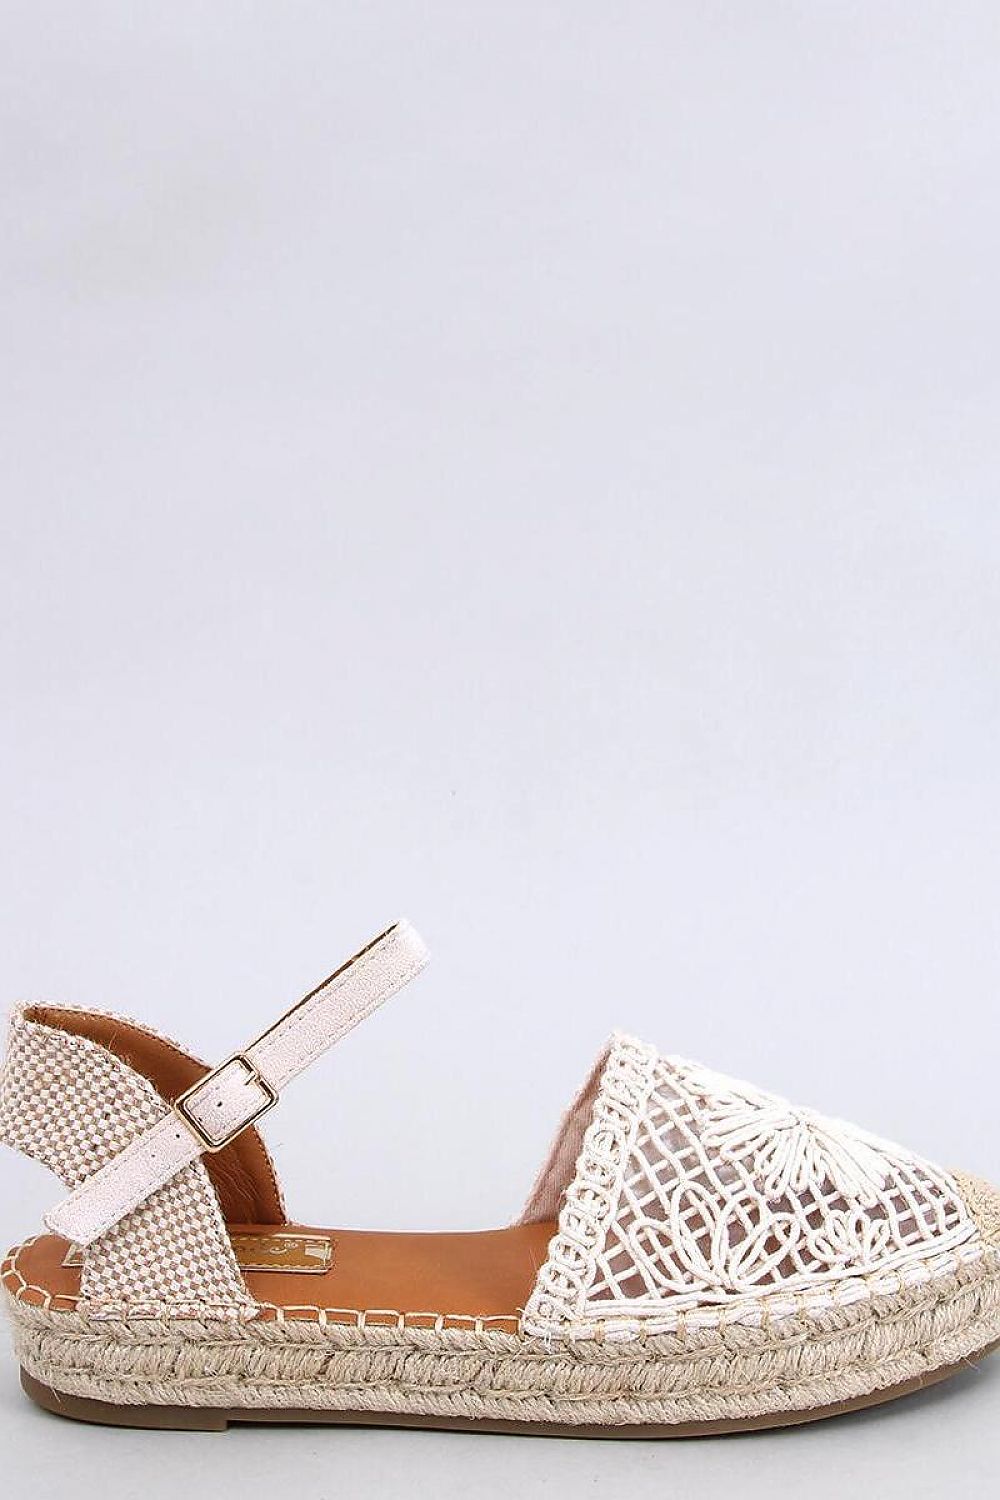 TEEK - Beige Bloom Knit Espadrilles Sandals SHOES TEEK MH 6.5  